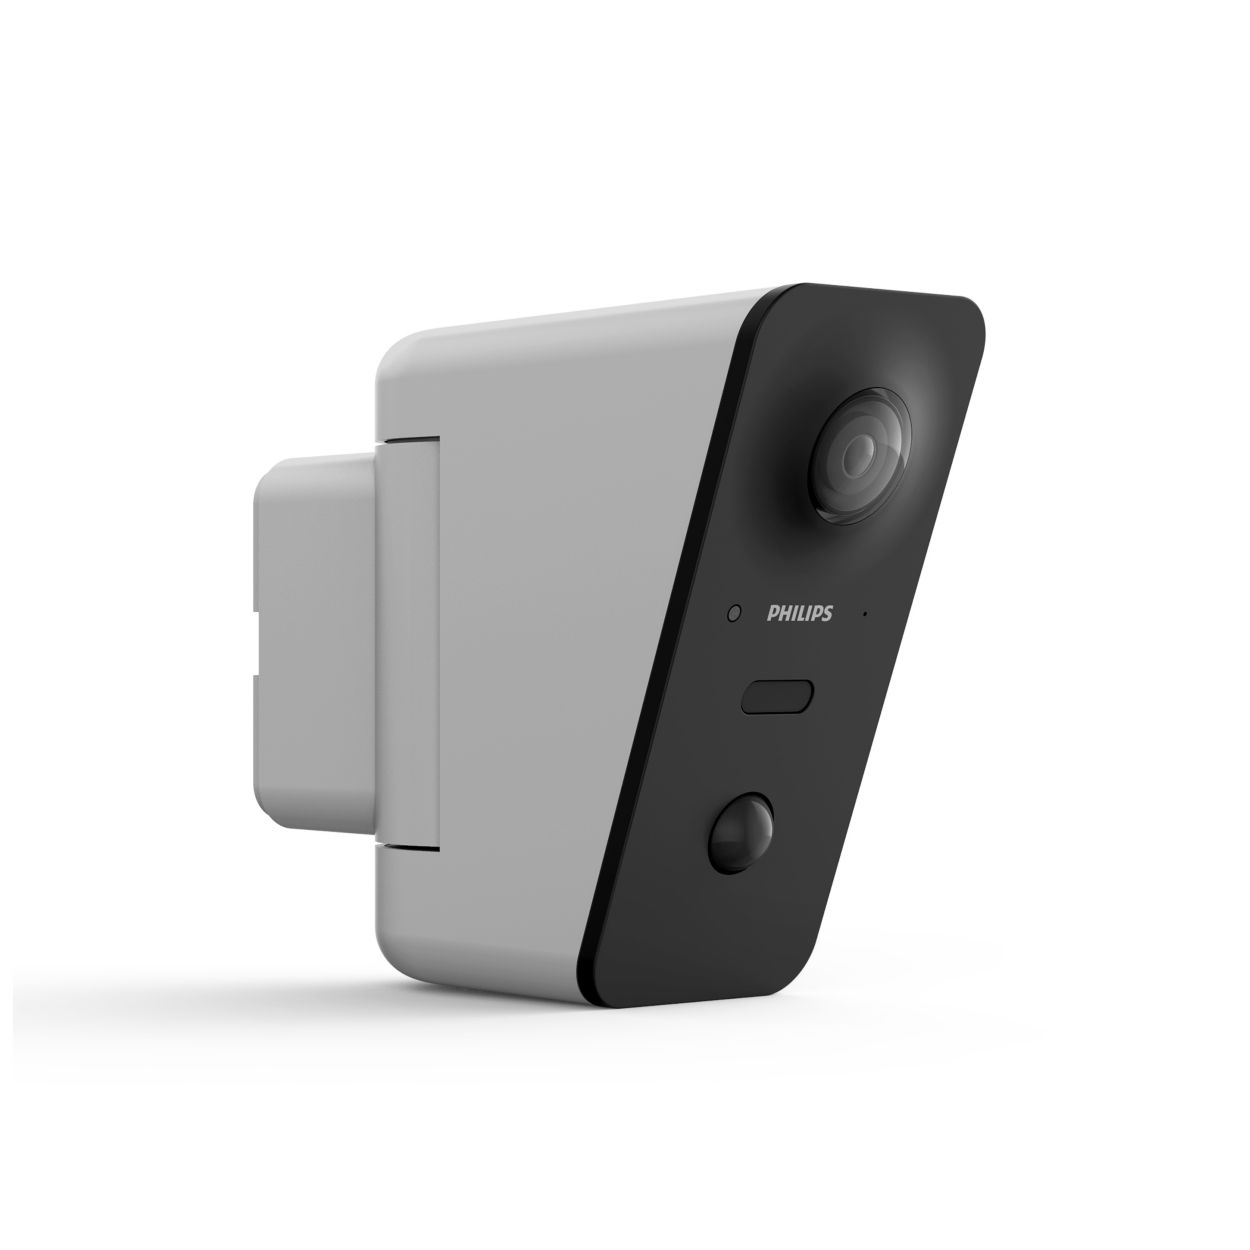 Philips InSight, une caméra de surveillance aussi pratique que compacte